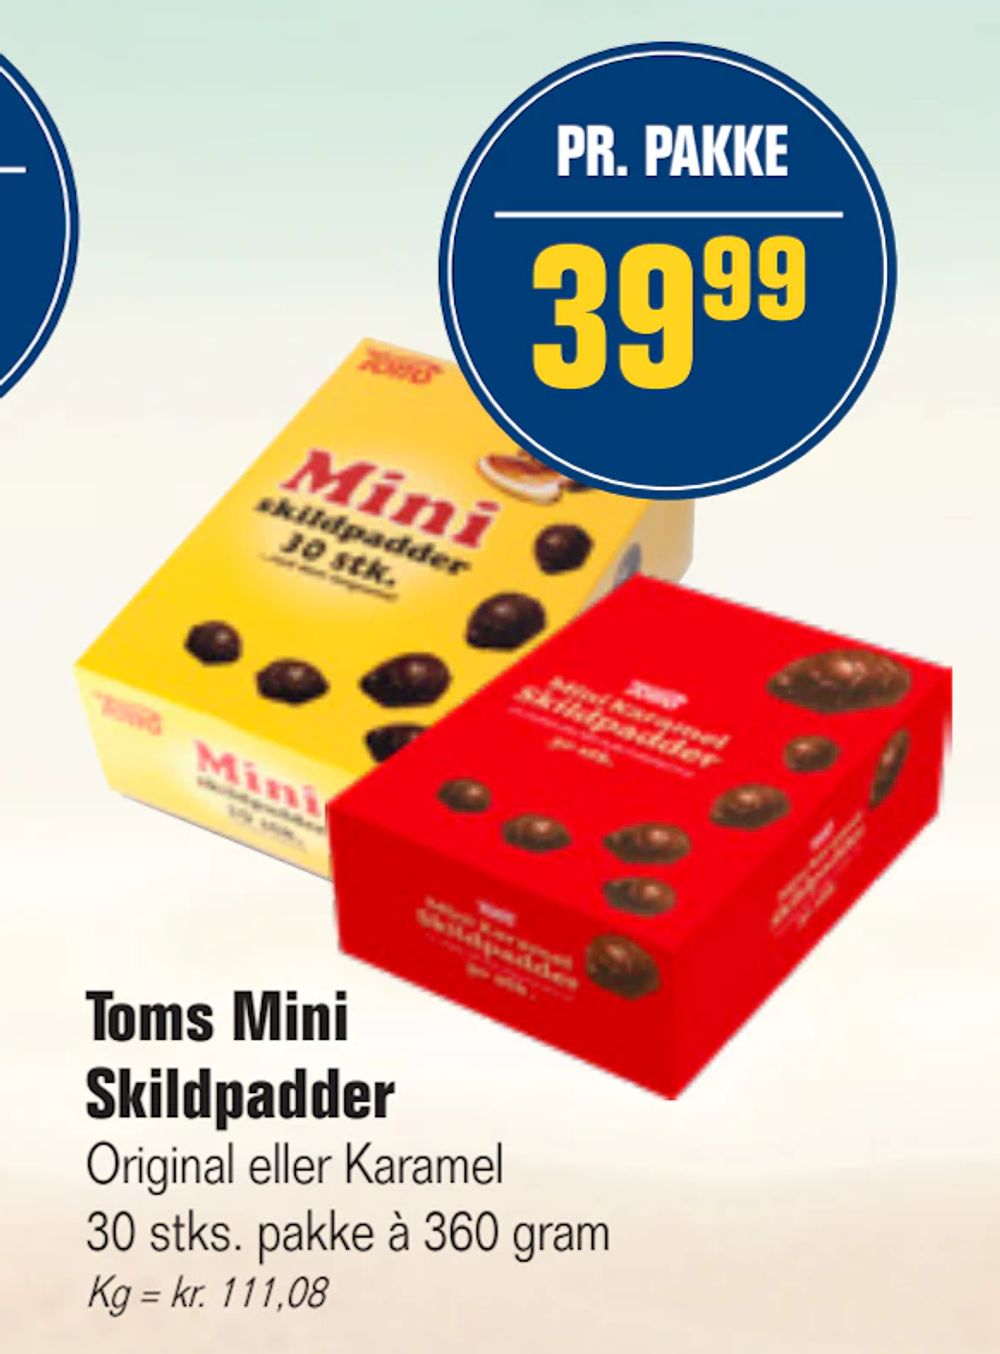 Tilbud på Toms Mini Skildpadder fra Otto Duborg til 39,99 kr.